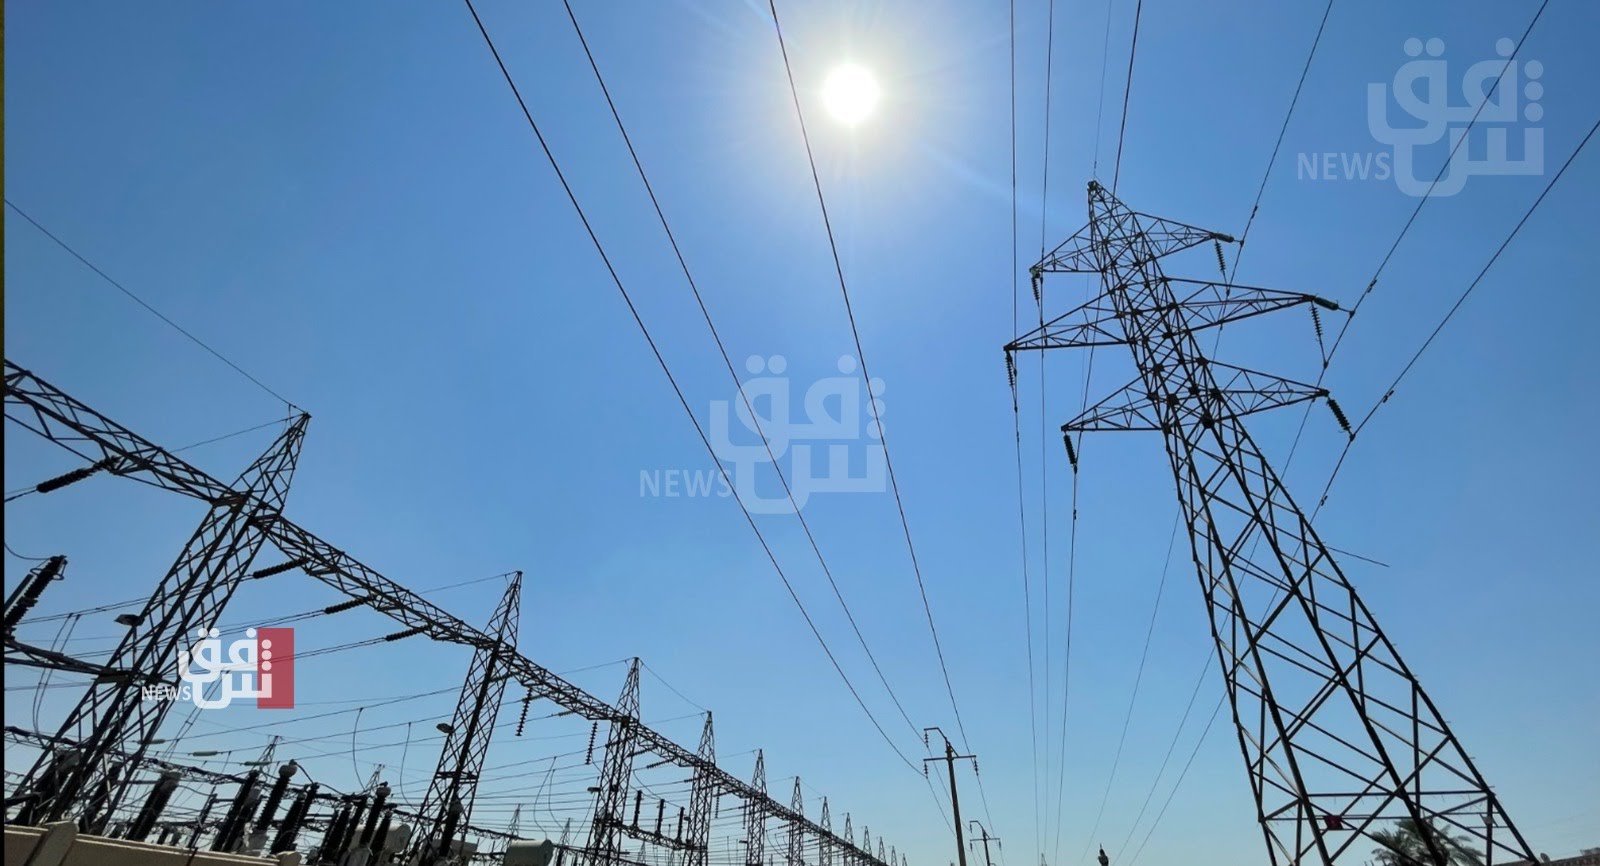 الكهرباء العراقية تستعد للشتاء بخطة "طارئة" وتطالب بـ"طائرات مسيرة"